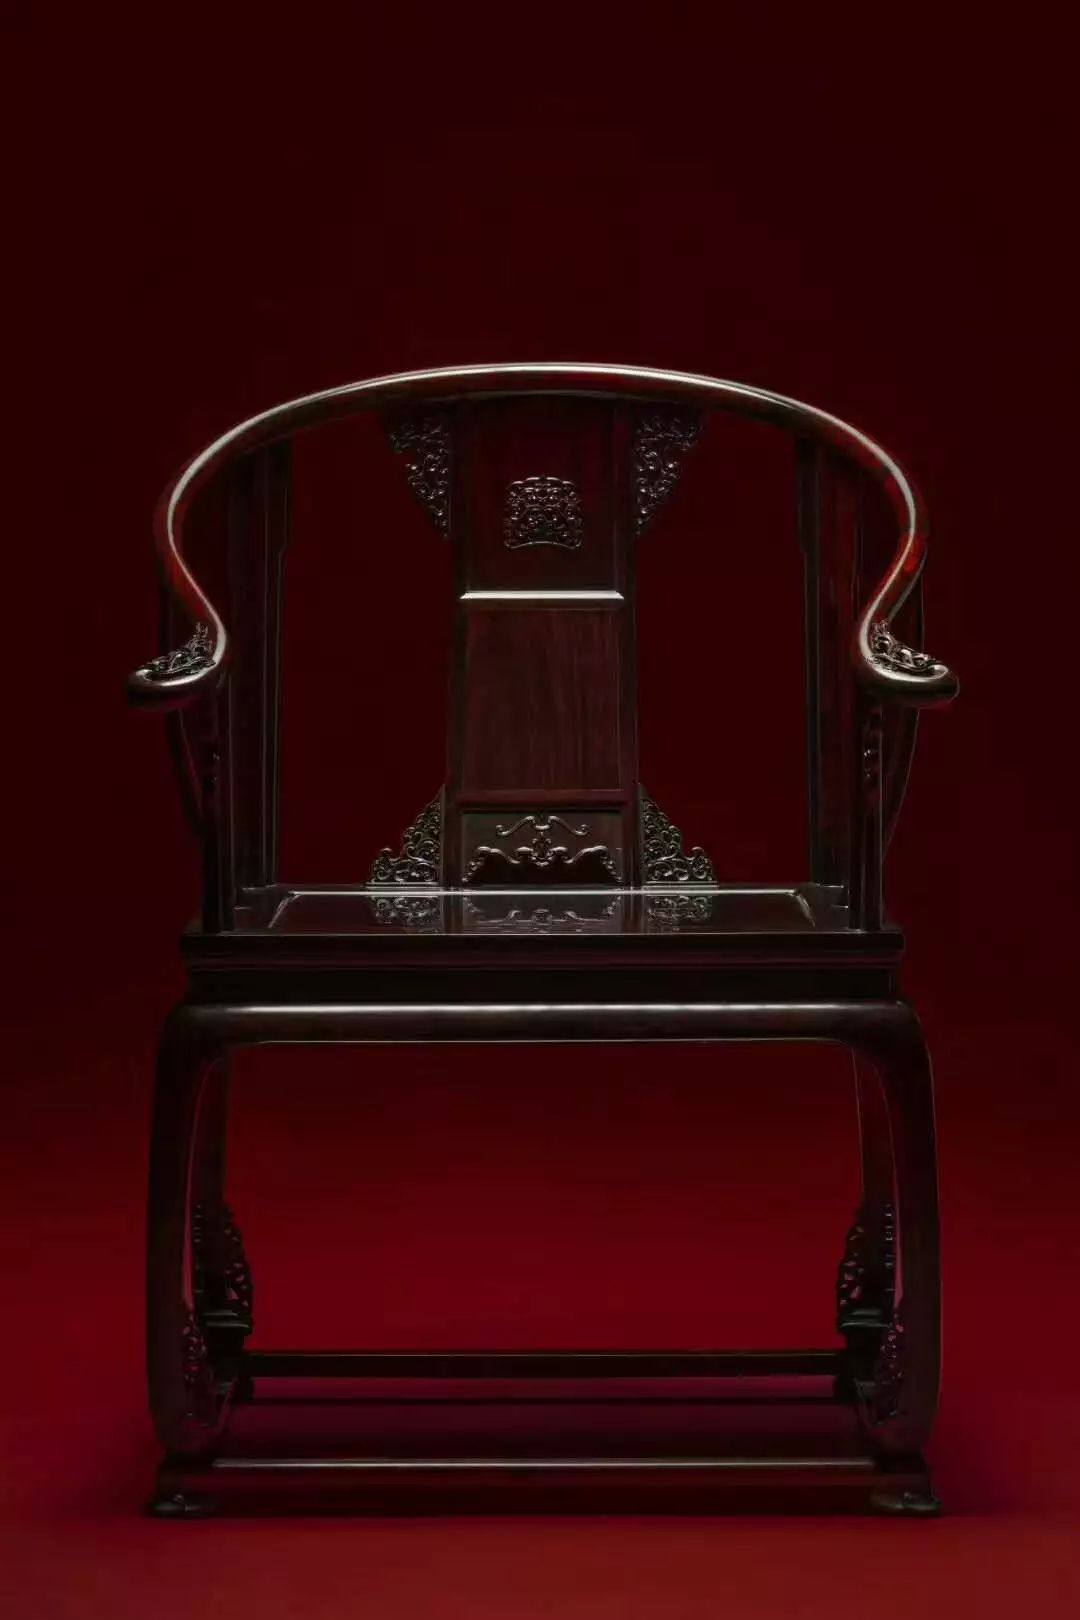 比起故宫博物院长退休,这款极具灵性的皇宫椅更应该被